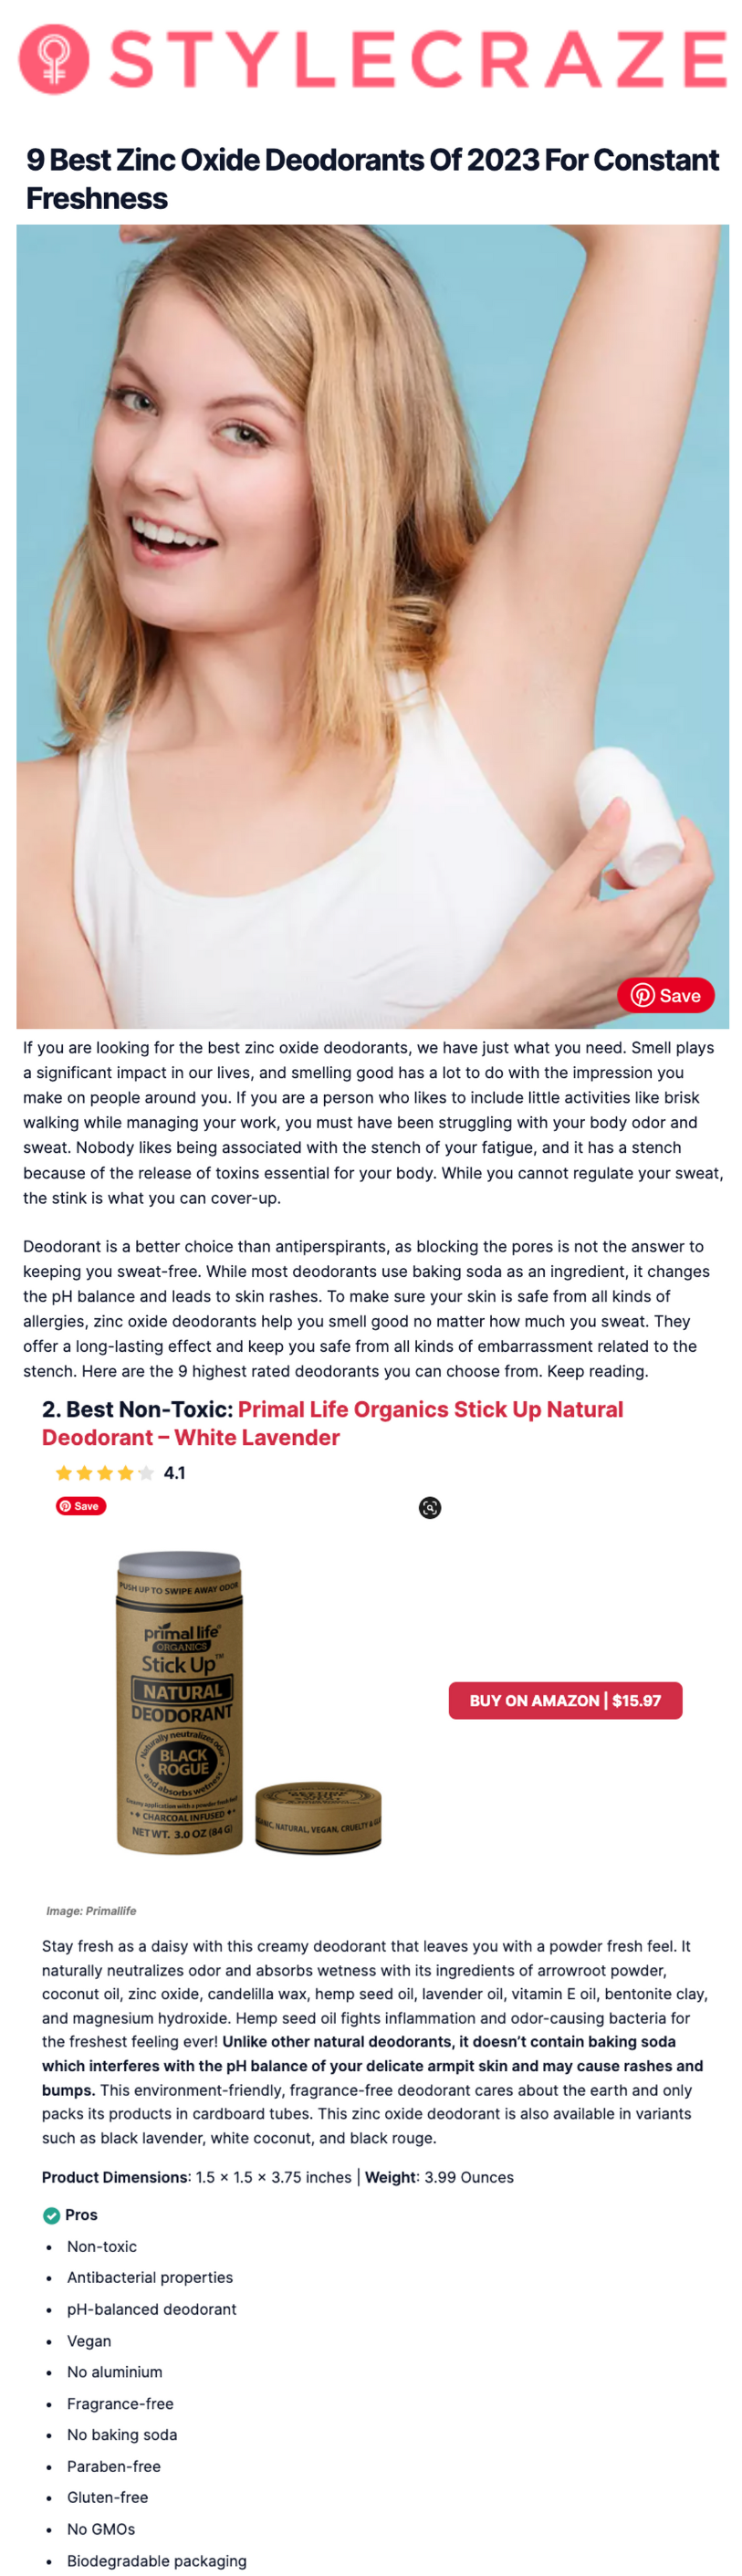 Primal Life Organics Stick Up Deodorant Best Non-Toxic Deodorant